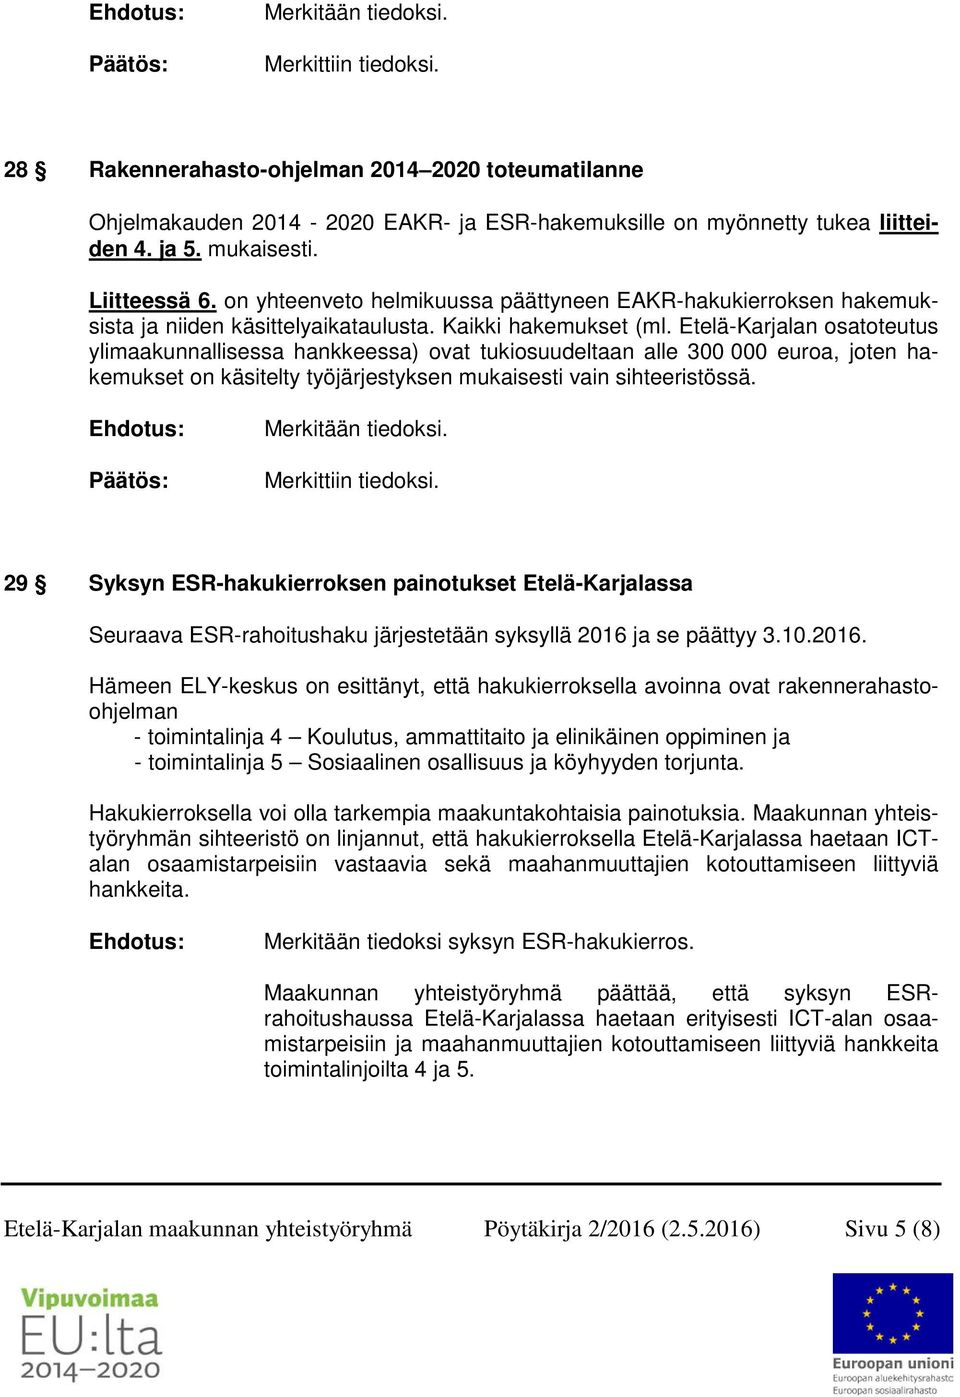 Etelä-Karjalan osatoteutus ylimaakunnallisessa hankkeessa) ovat tukiosuudeltaan alle 300 000 euroa, joten hakemukset on käsitelty työjärjestyksen mukaisesti vain sihteeristössä. Merkittiin tiedoksi.